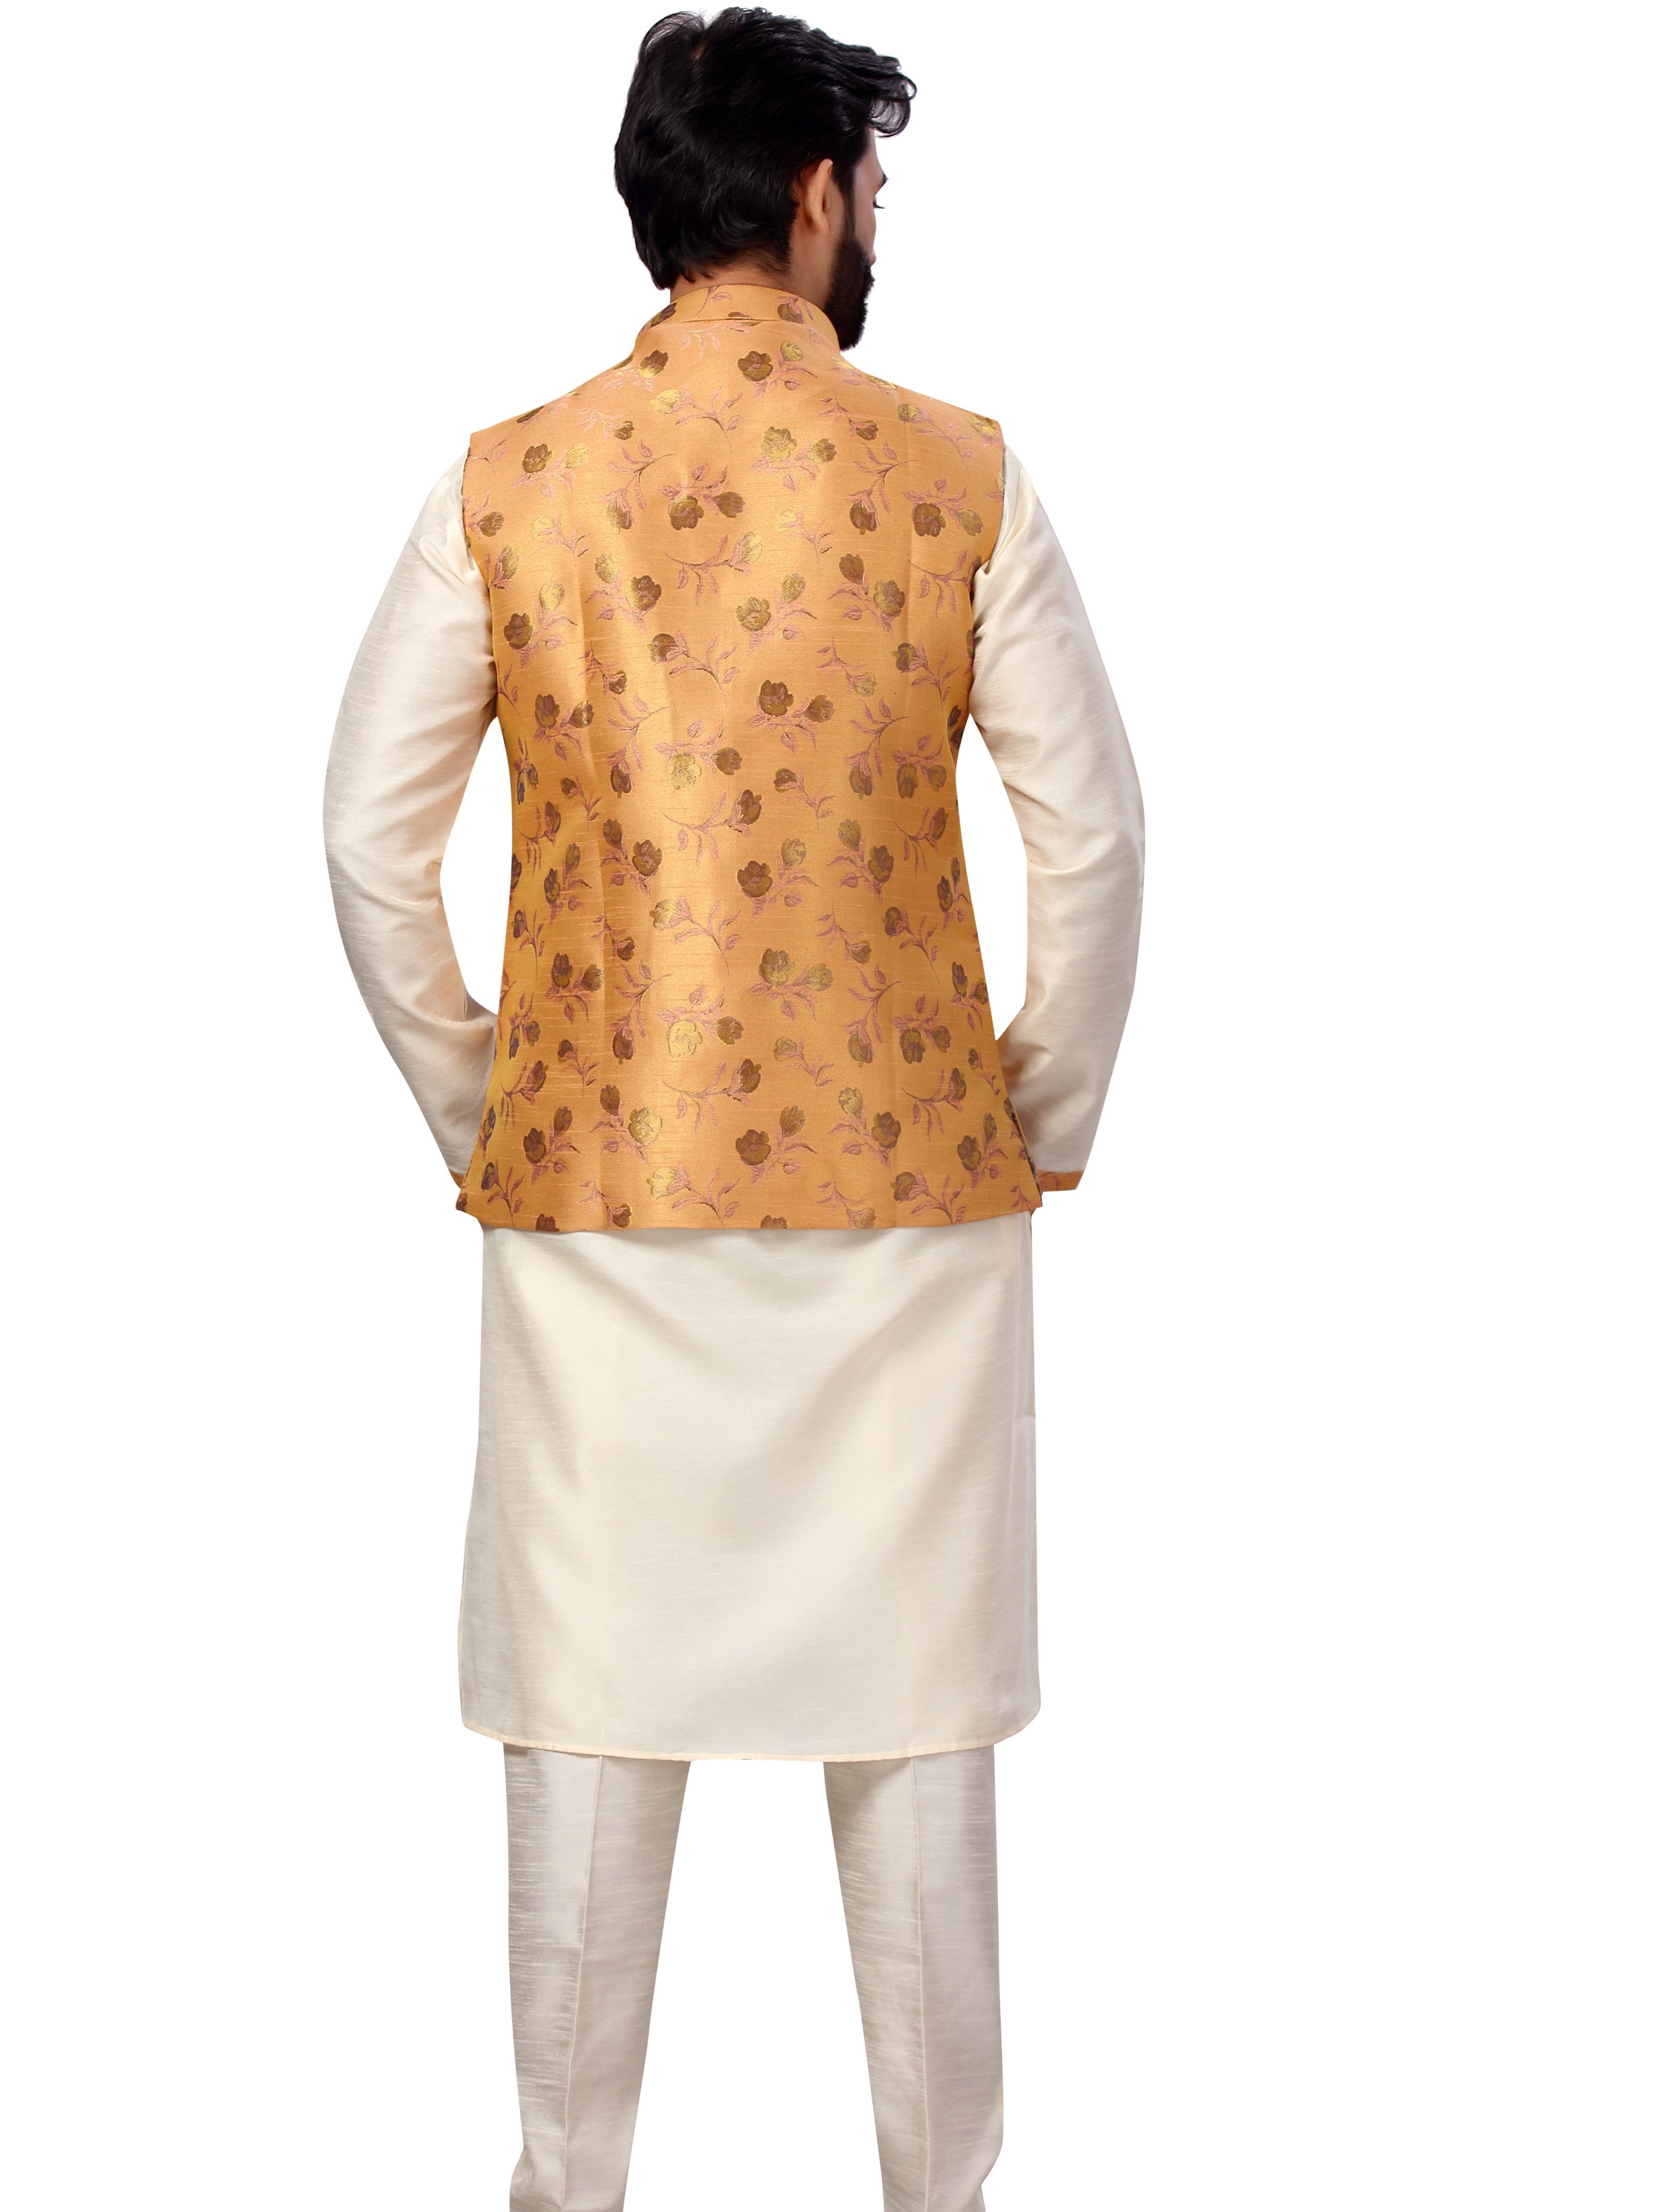 Silk Kurta Payjama With Brocade Jacket - Roop Darshan